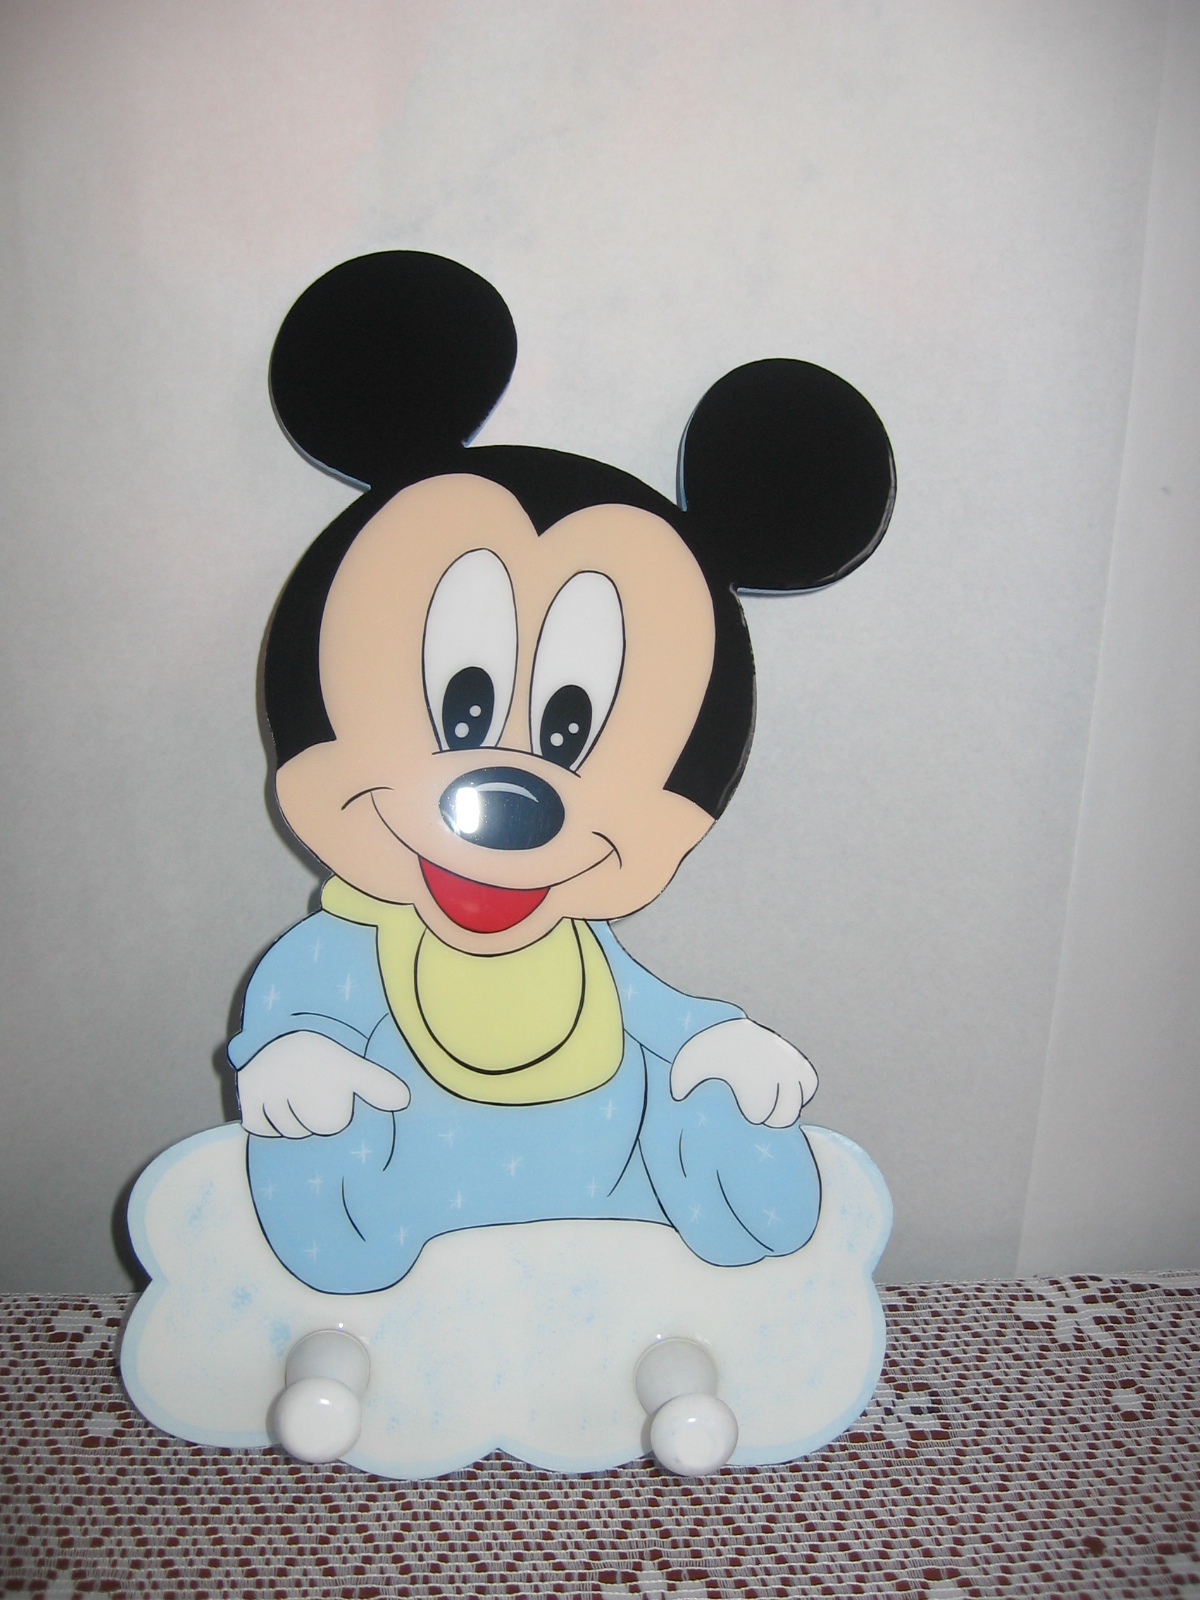 MANITOS CURIOSAS: Mickey y Minnie Mouse